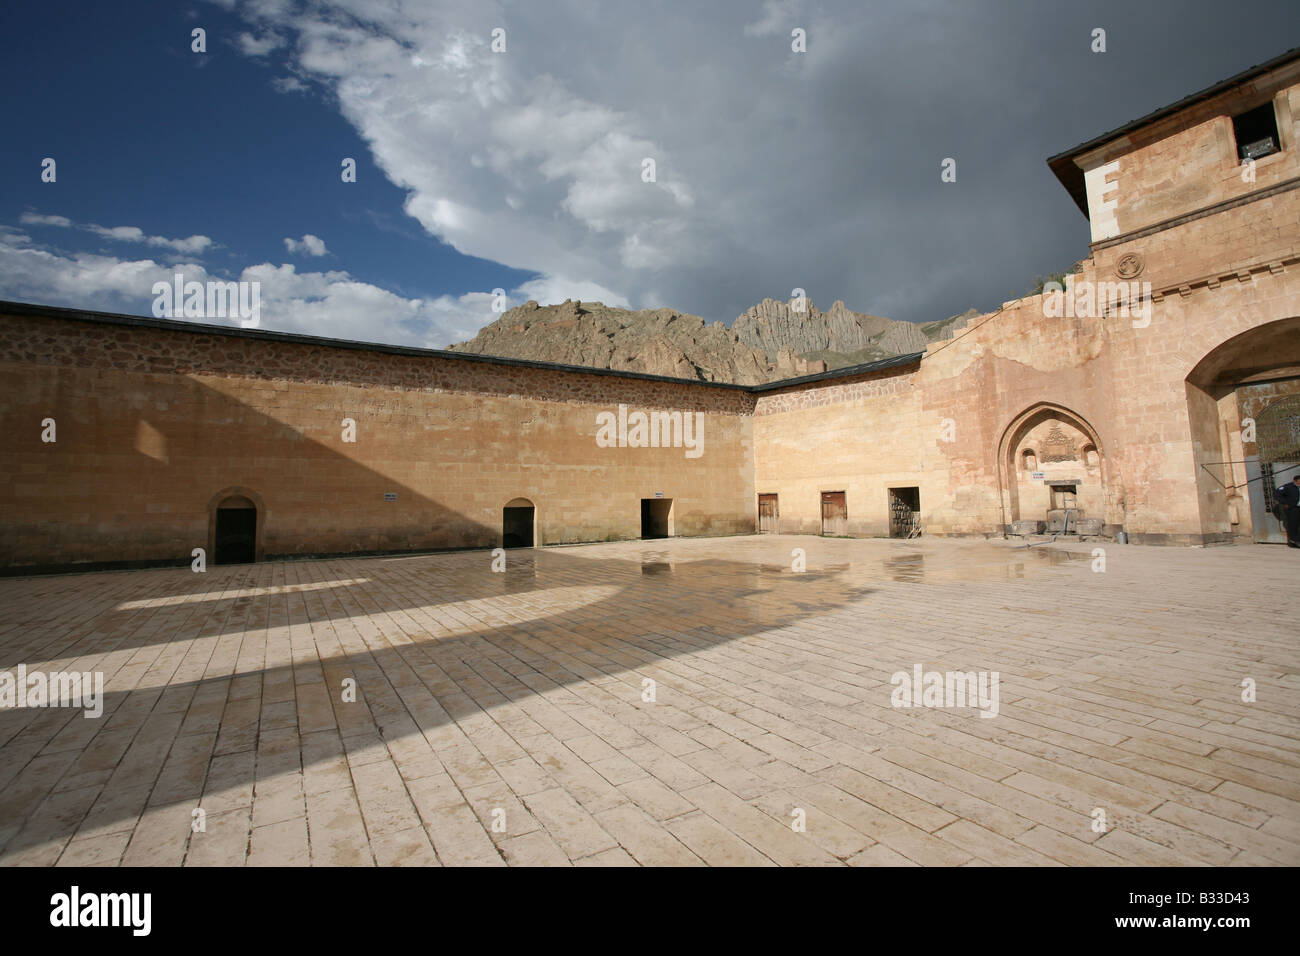 Ishak Pasa Palace near Dogubeyazit, Agri, Turkey Stock Photo